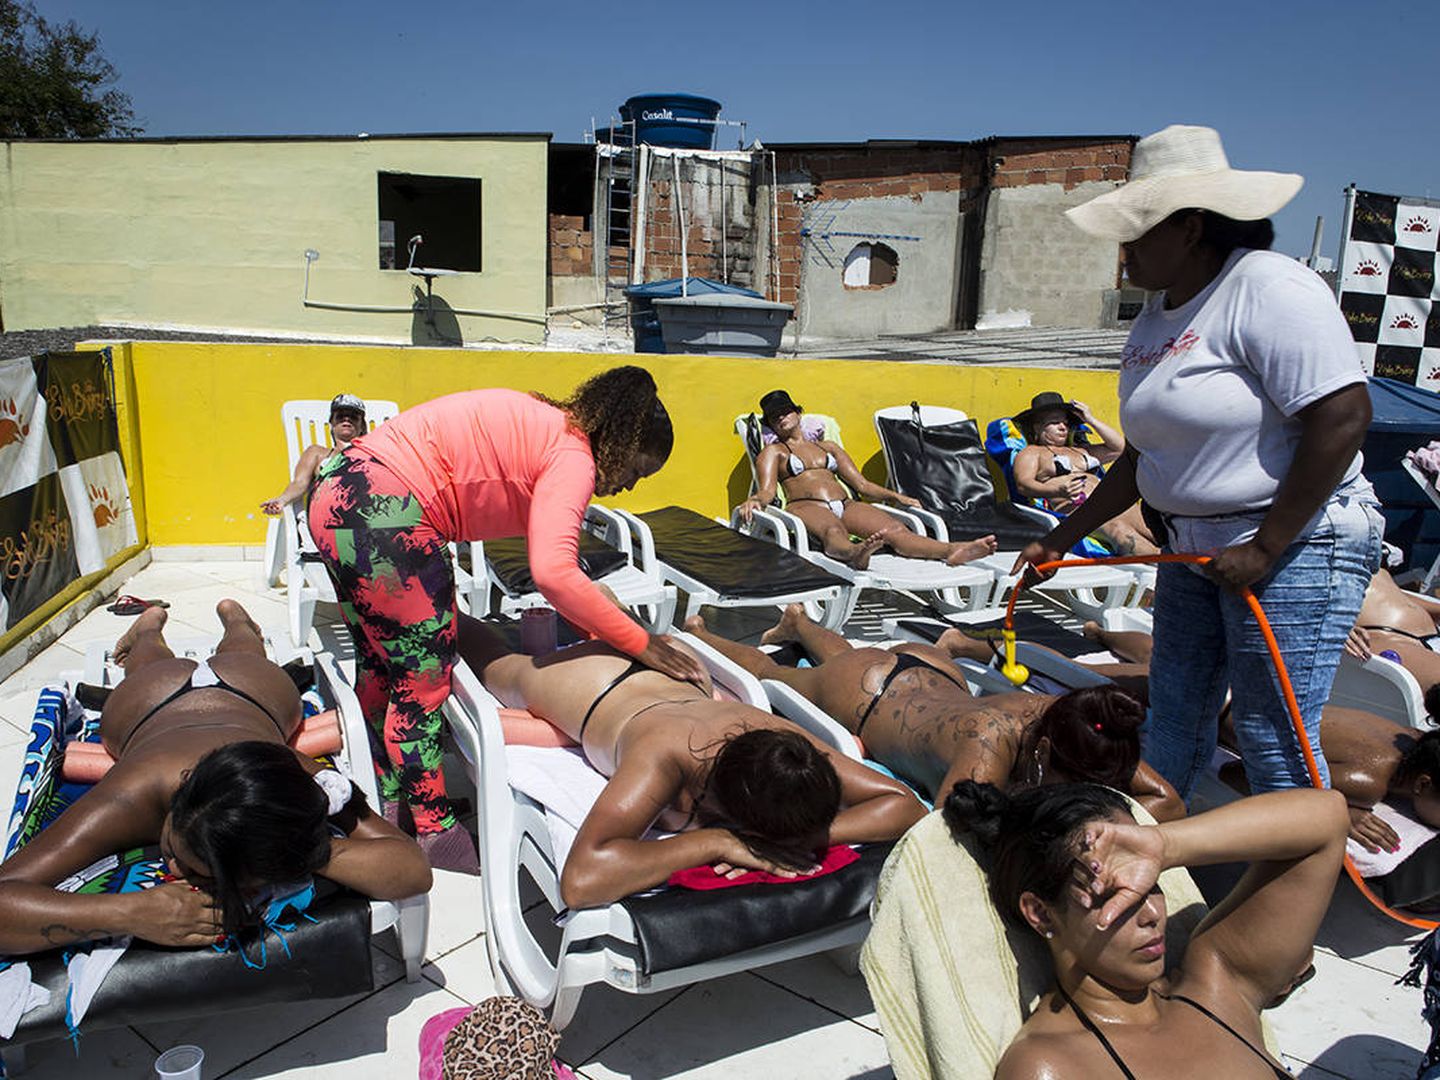 Un grupo de mujeres toma el sol en la terraza de Erika Bronze. (V. Saccone)